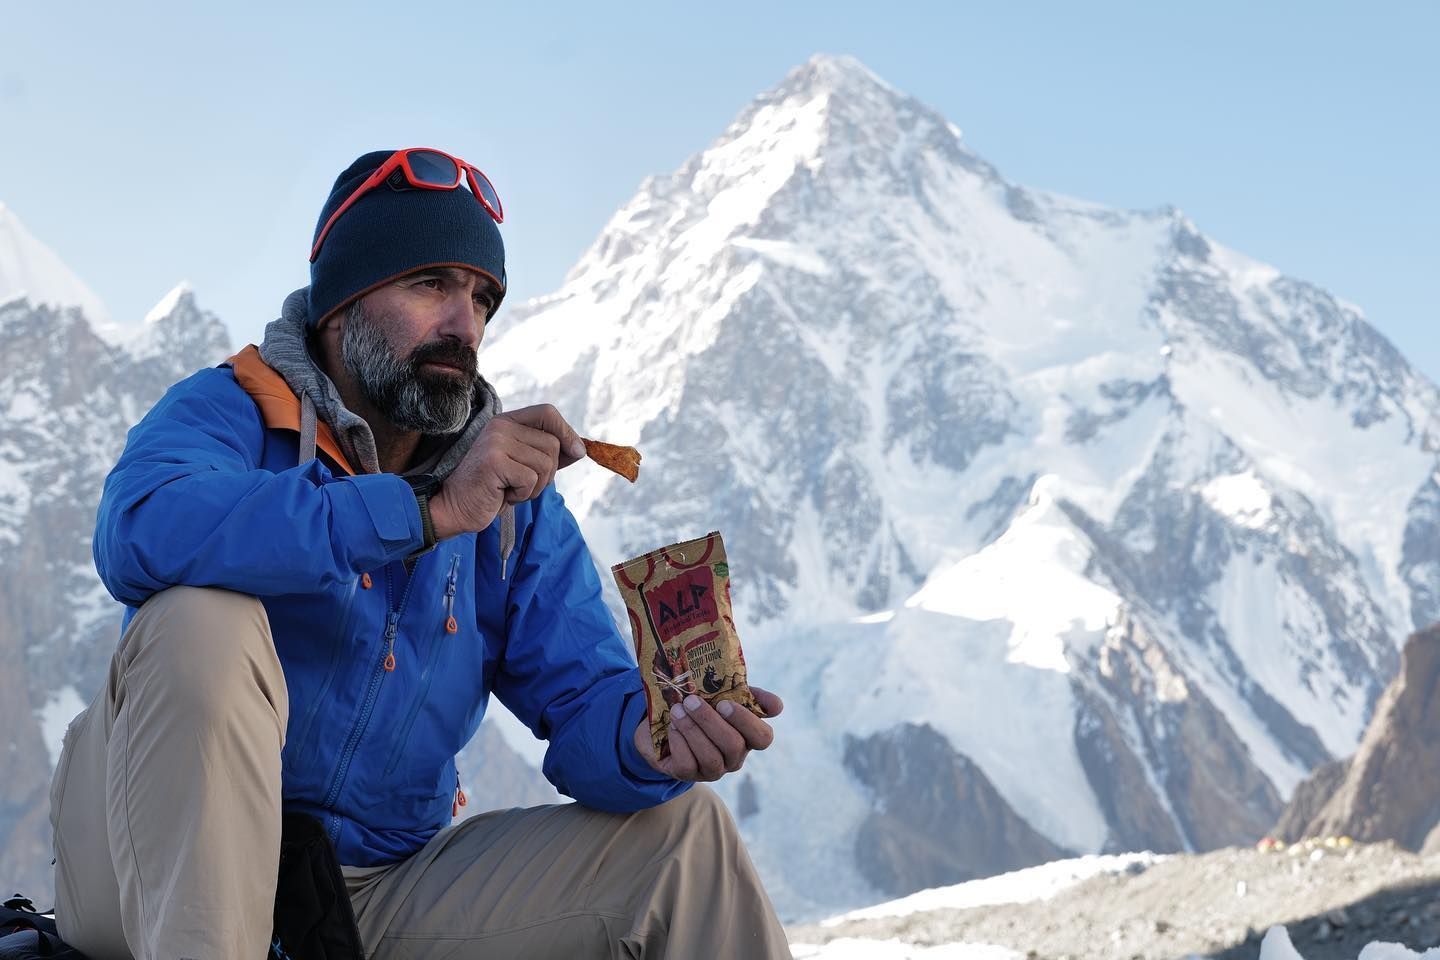 Faceți cunoștință cu alpinist curajos care cucerește vârfurile munților [PHOTO]